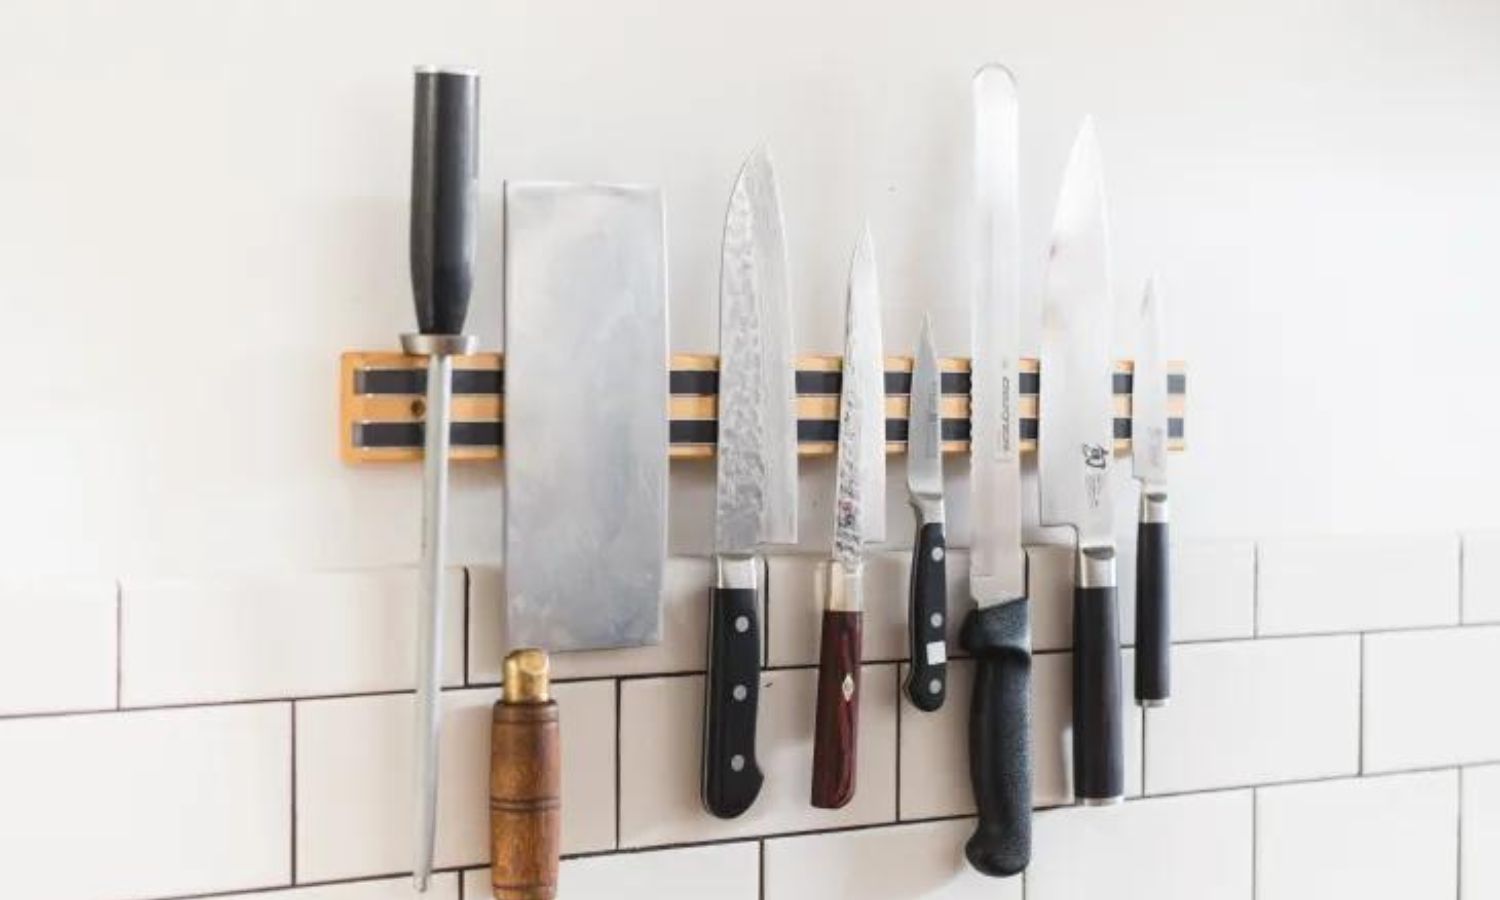 magnetic knife holder ideas